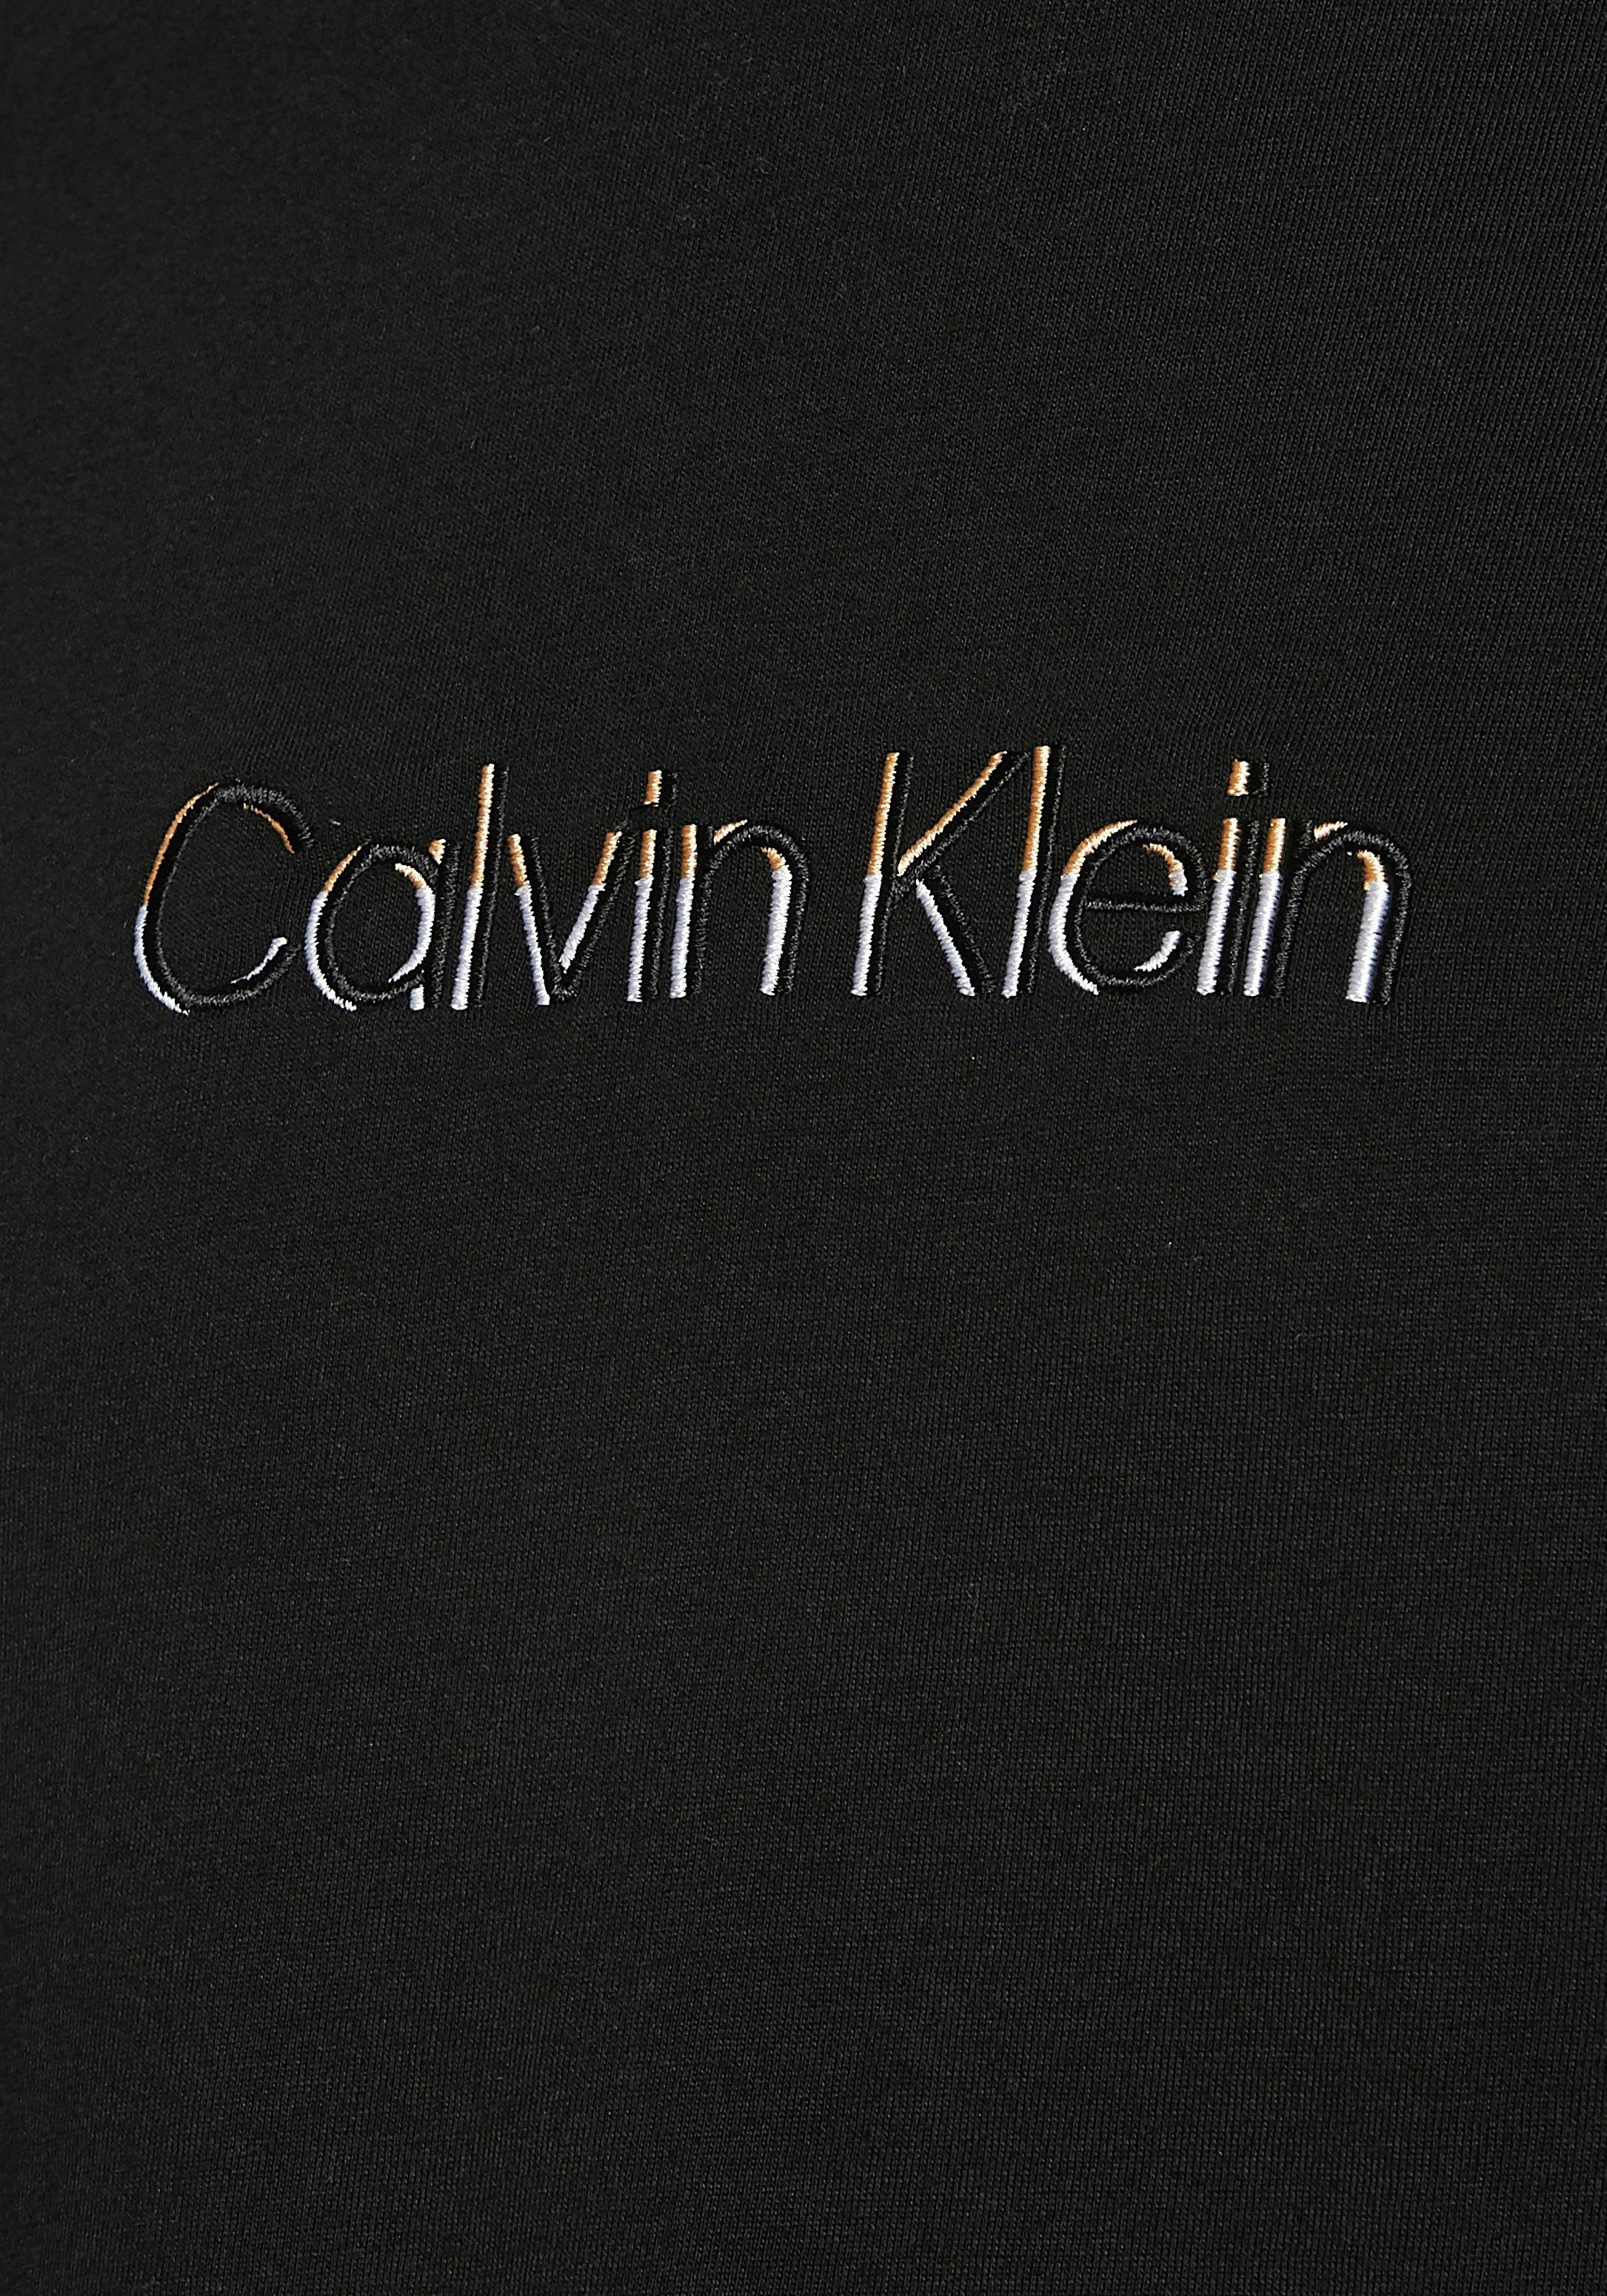 T-Shirt MULTI LOGO schwarz Calvin COLOR Klein